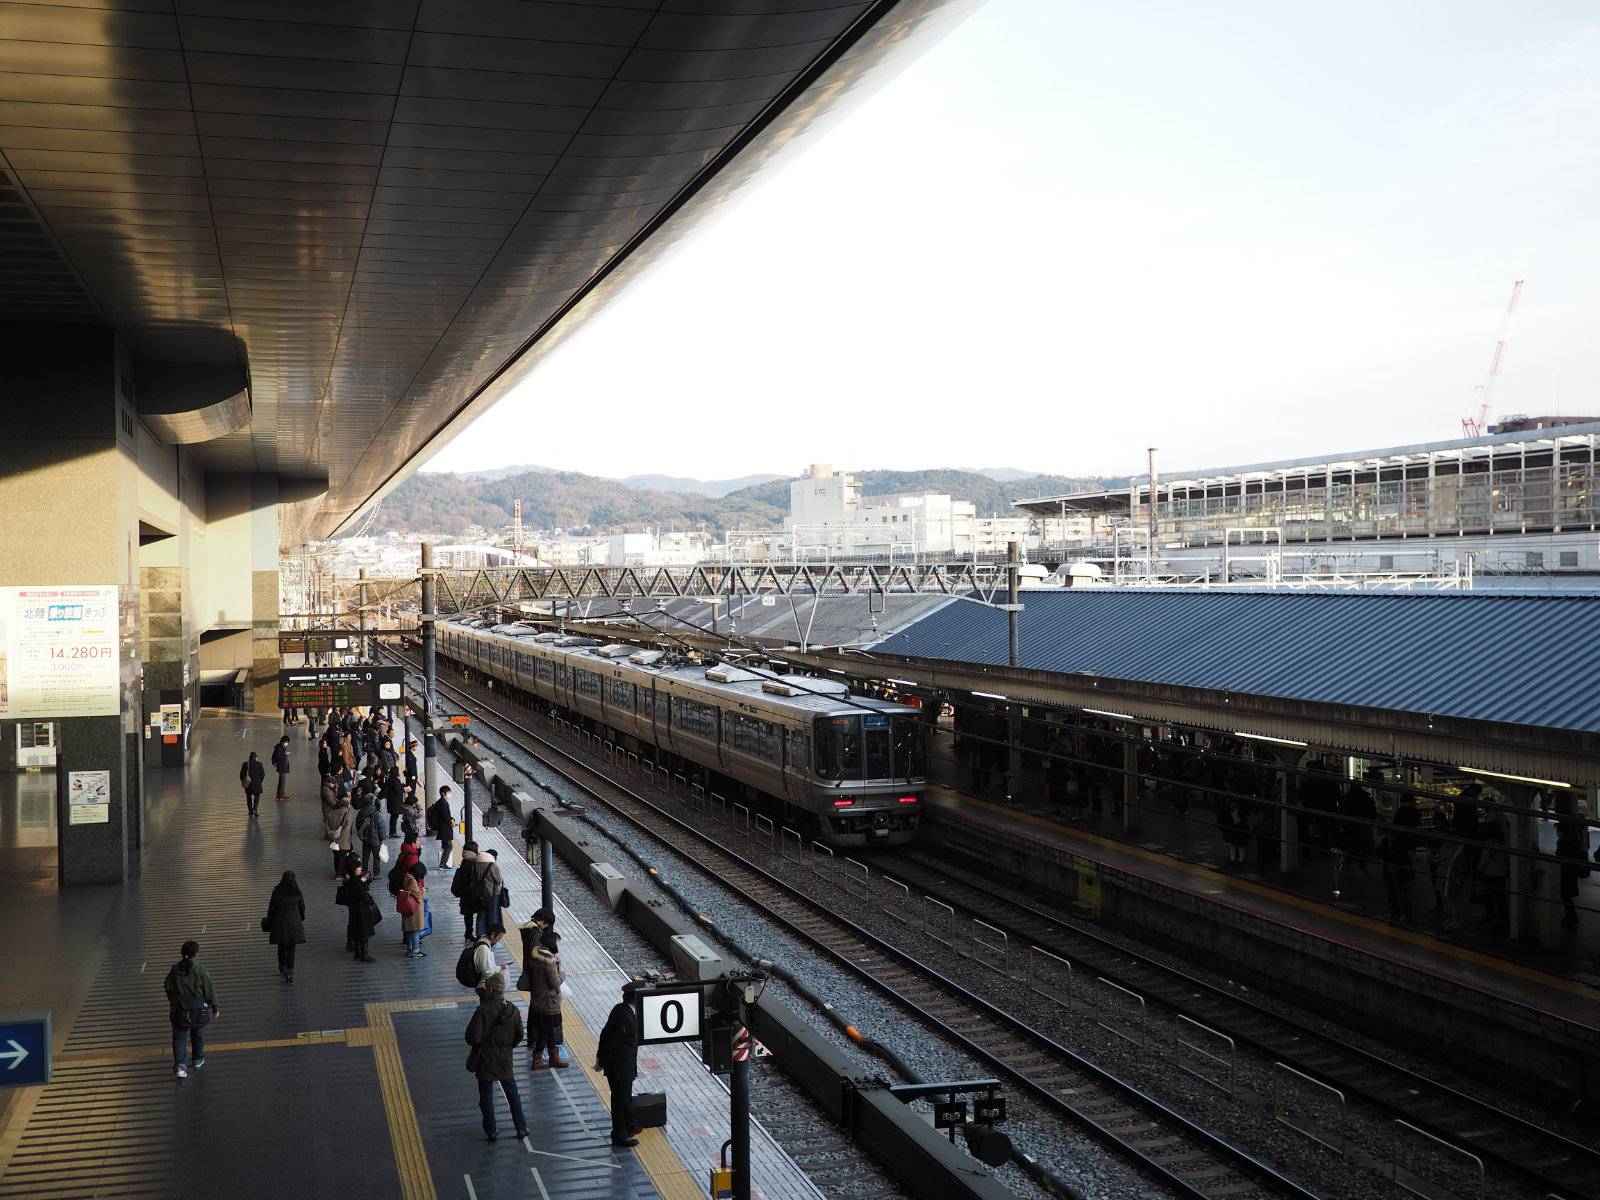 Back at Kyoto station